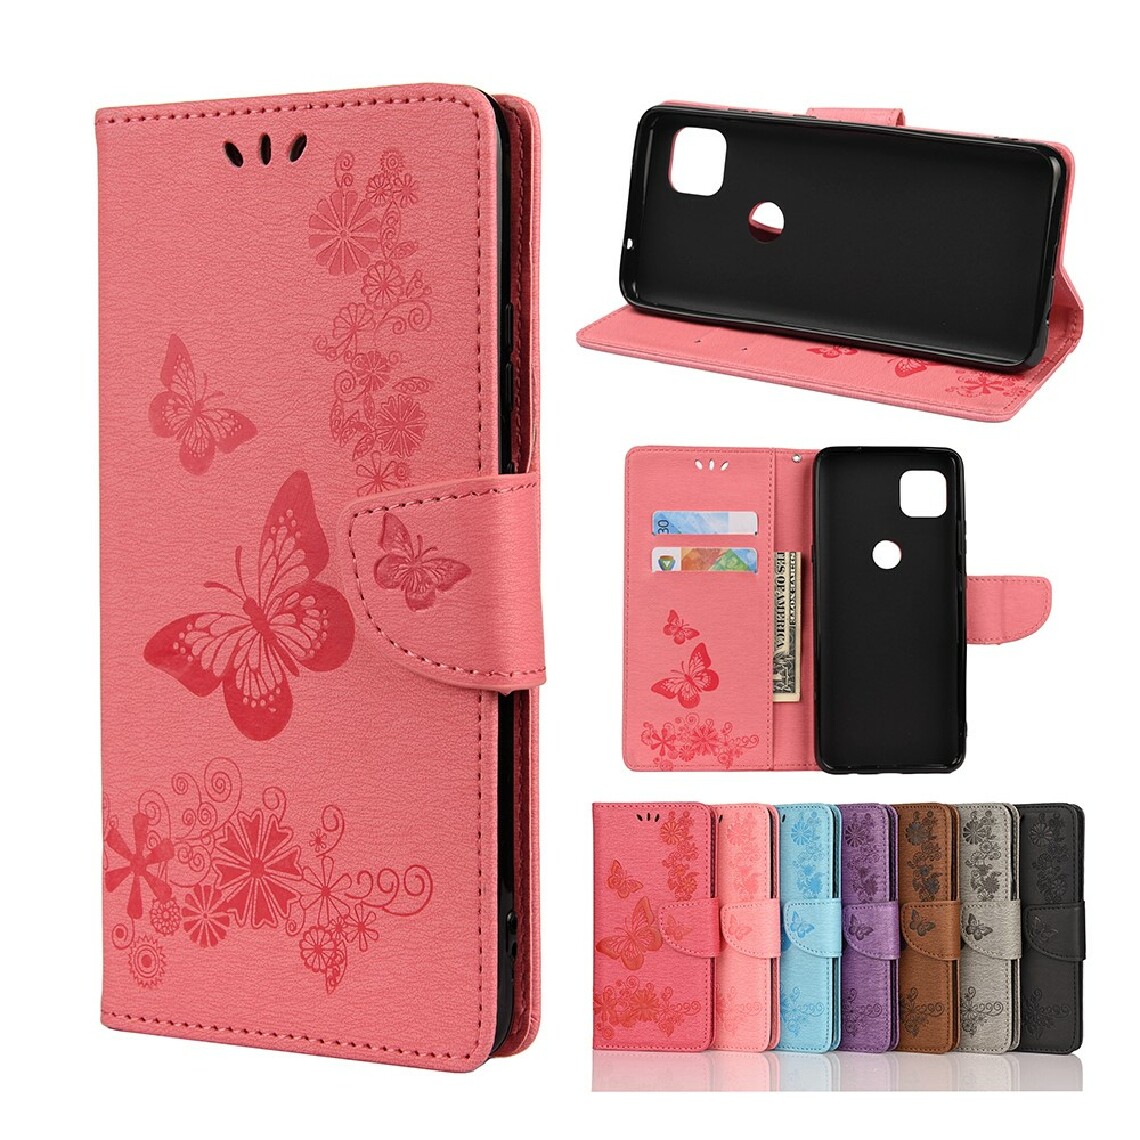 Other - Etui en PU impression de motif papillon rose pour votre Motorola Moto G9 Power - Coque, étui smartphone